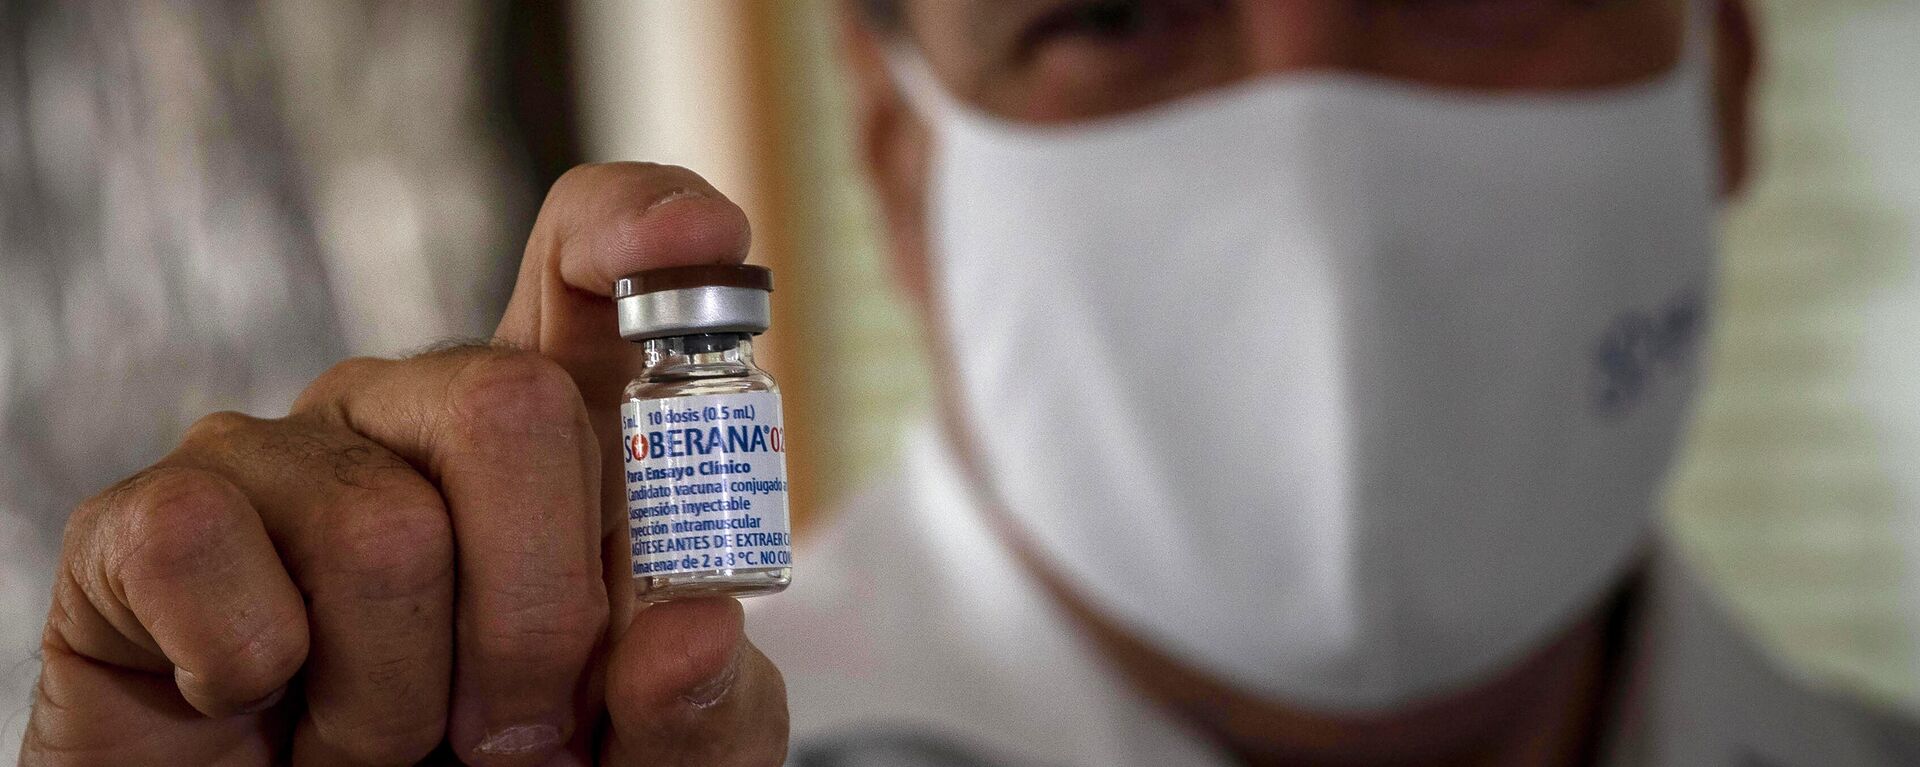 Un médico sostiene la vacuna cubana Soberana 02 contra COVID-19 - Sputnik Mundo, 1920, 16.04.2021